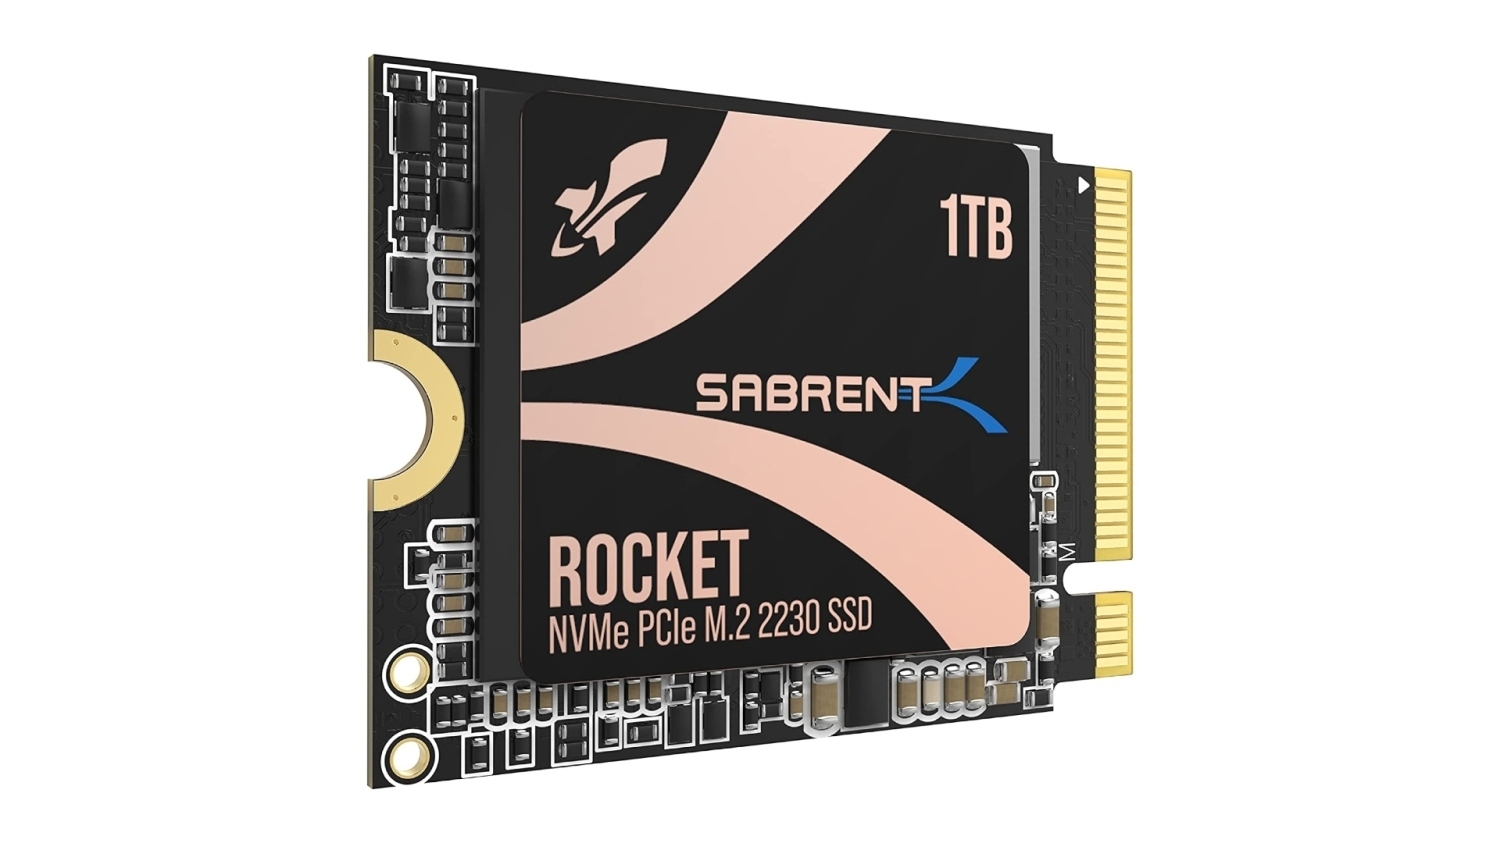 TweakTown Enlarged Image - Sabrent Rocket 2230 1TB NVMe SSD, image credit: Sabrent.